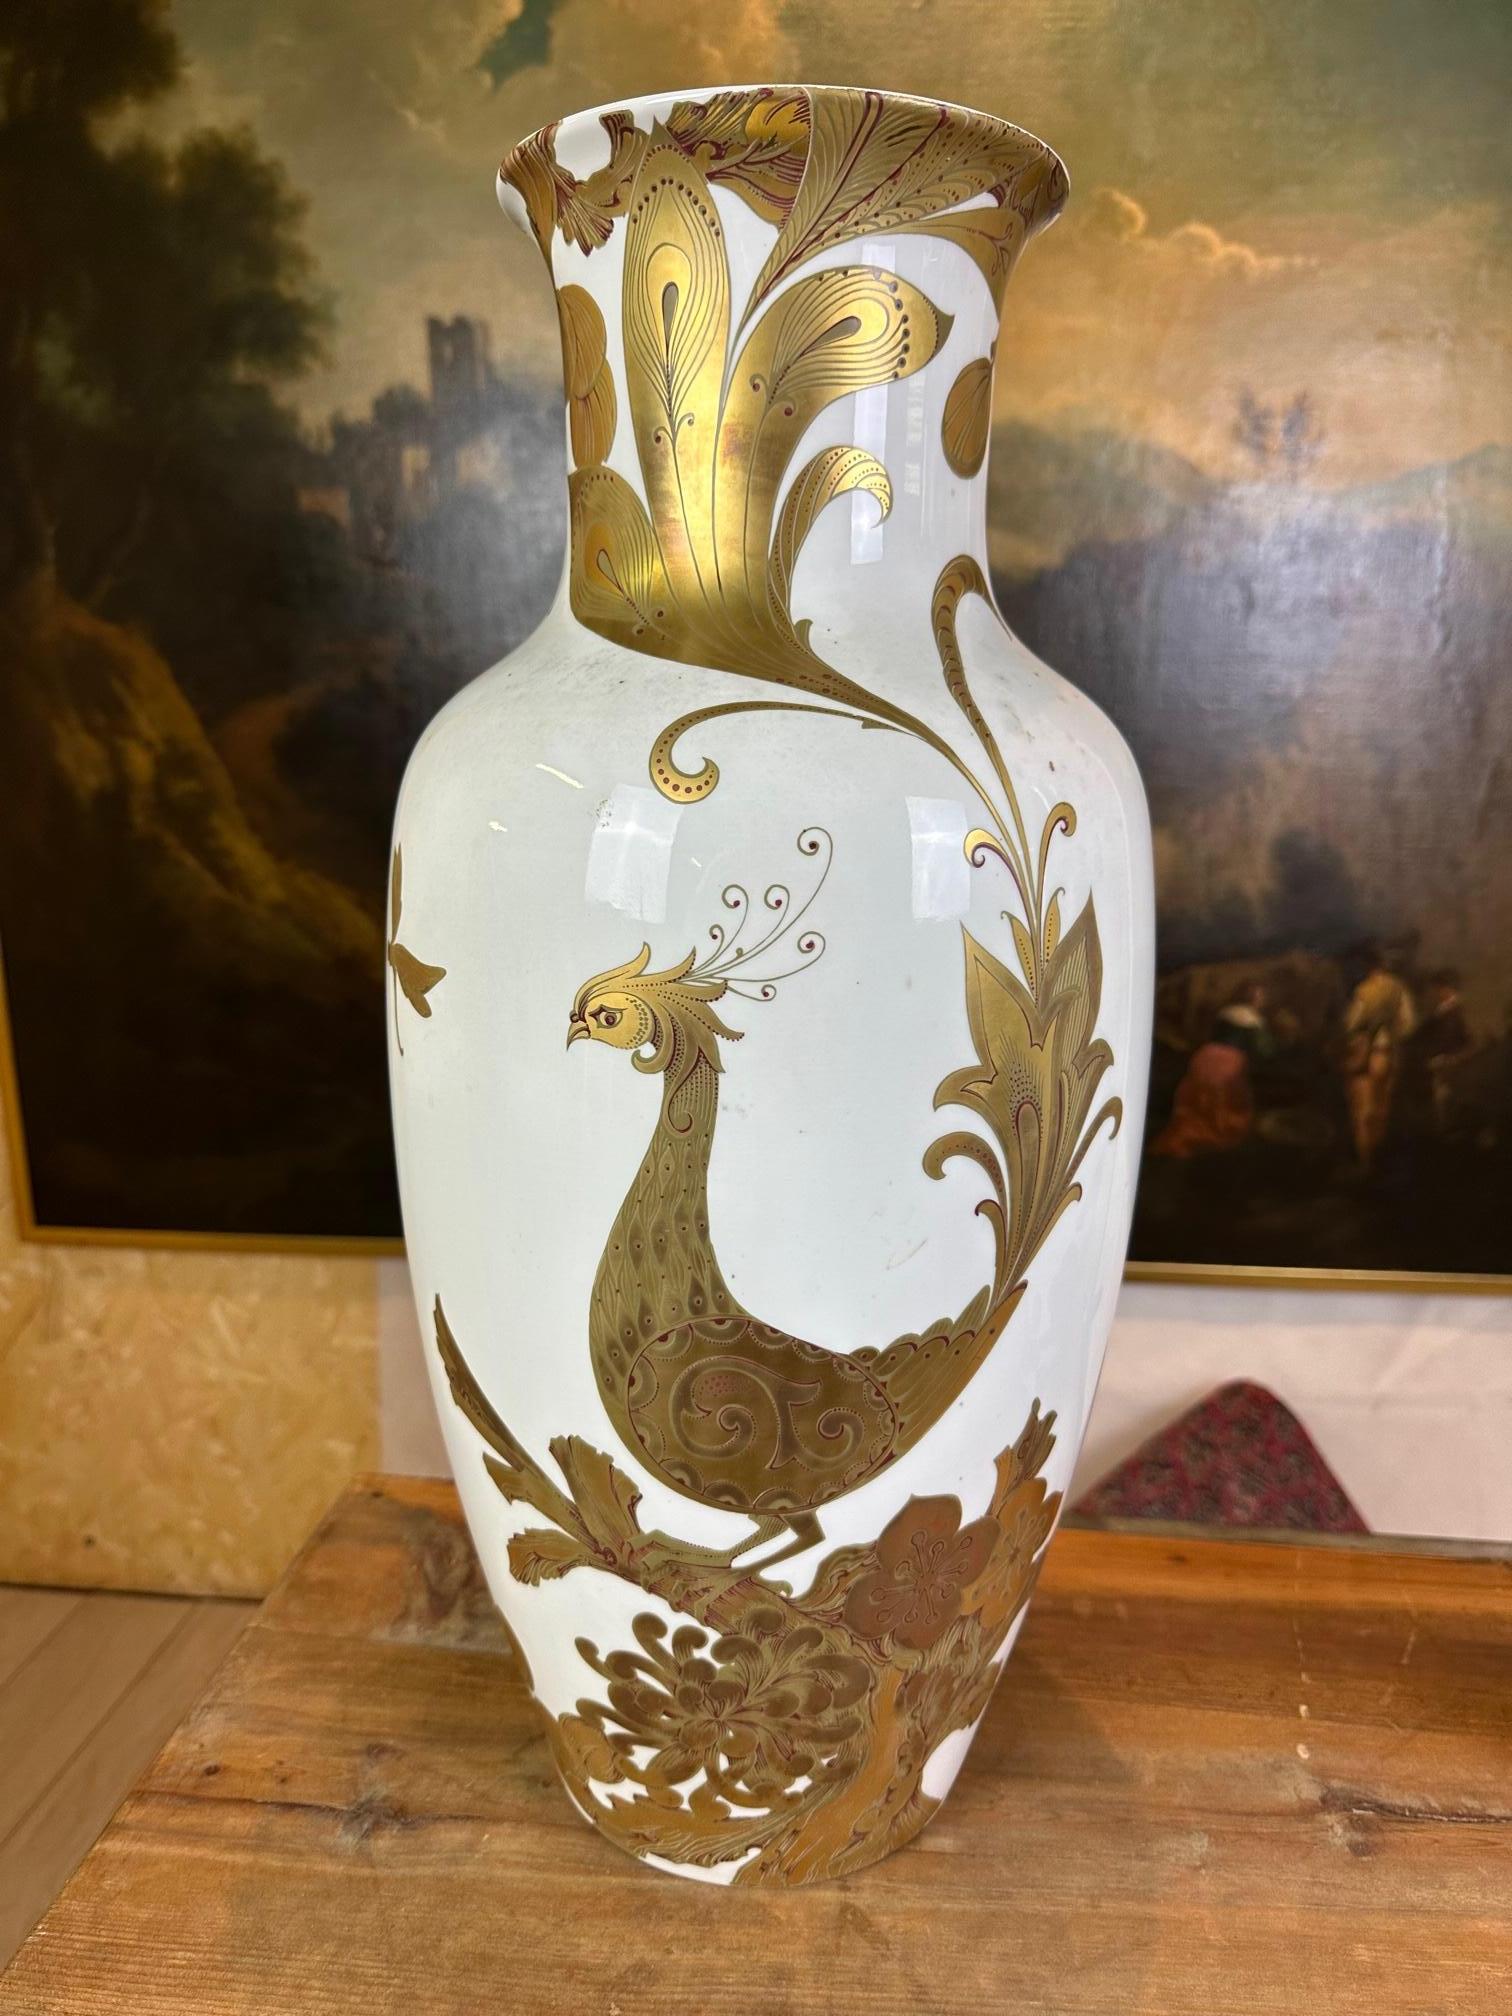 Paar elegante Vasen aus deutschem Kaiser-Porzellan mit Serenade-Dekor.
Sie sind sehr interessant wegen ihrer feinen Dekoration aus reinem Gold, die in der Runde mit floralen Motiven gearbeitet ist, wobei der berühmte Paradiesvogel und Schmetterlinge